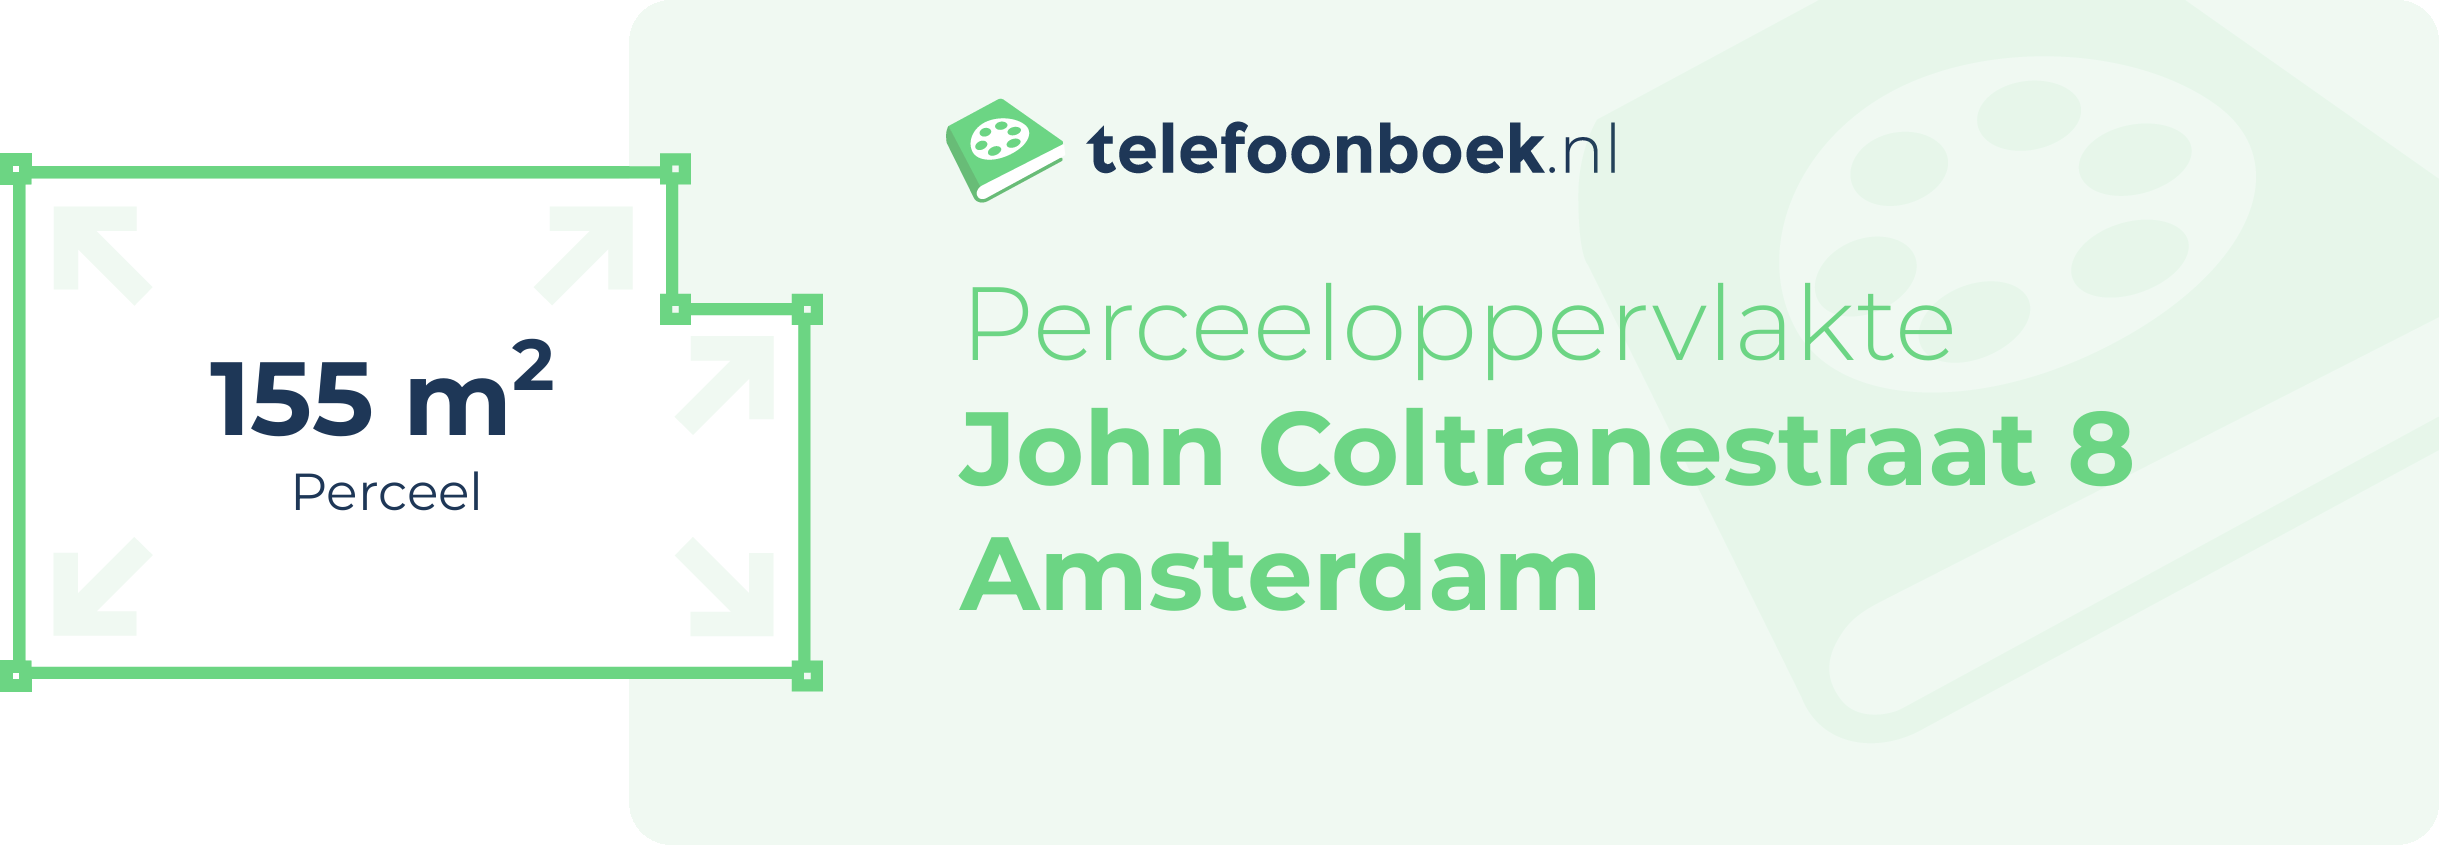 Perceeloppervlakte John Coltranestraat 8 Amsterdam